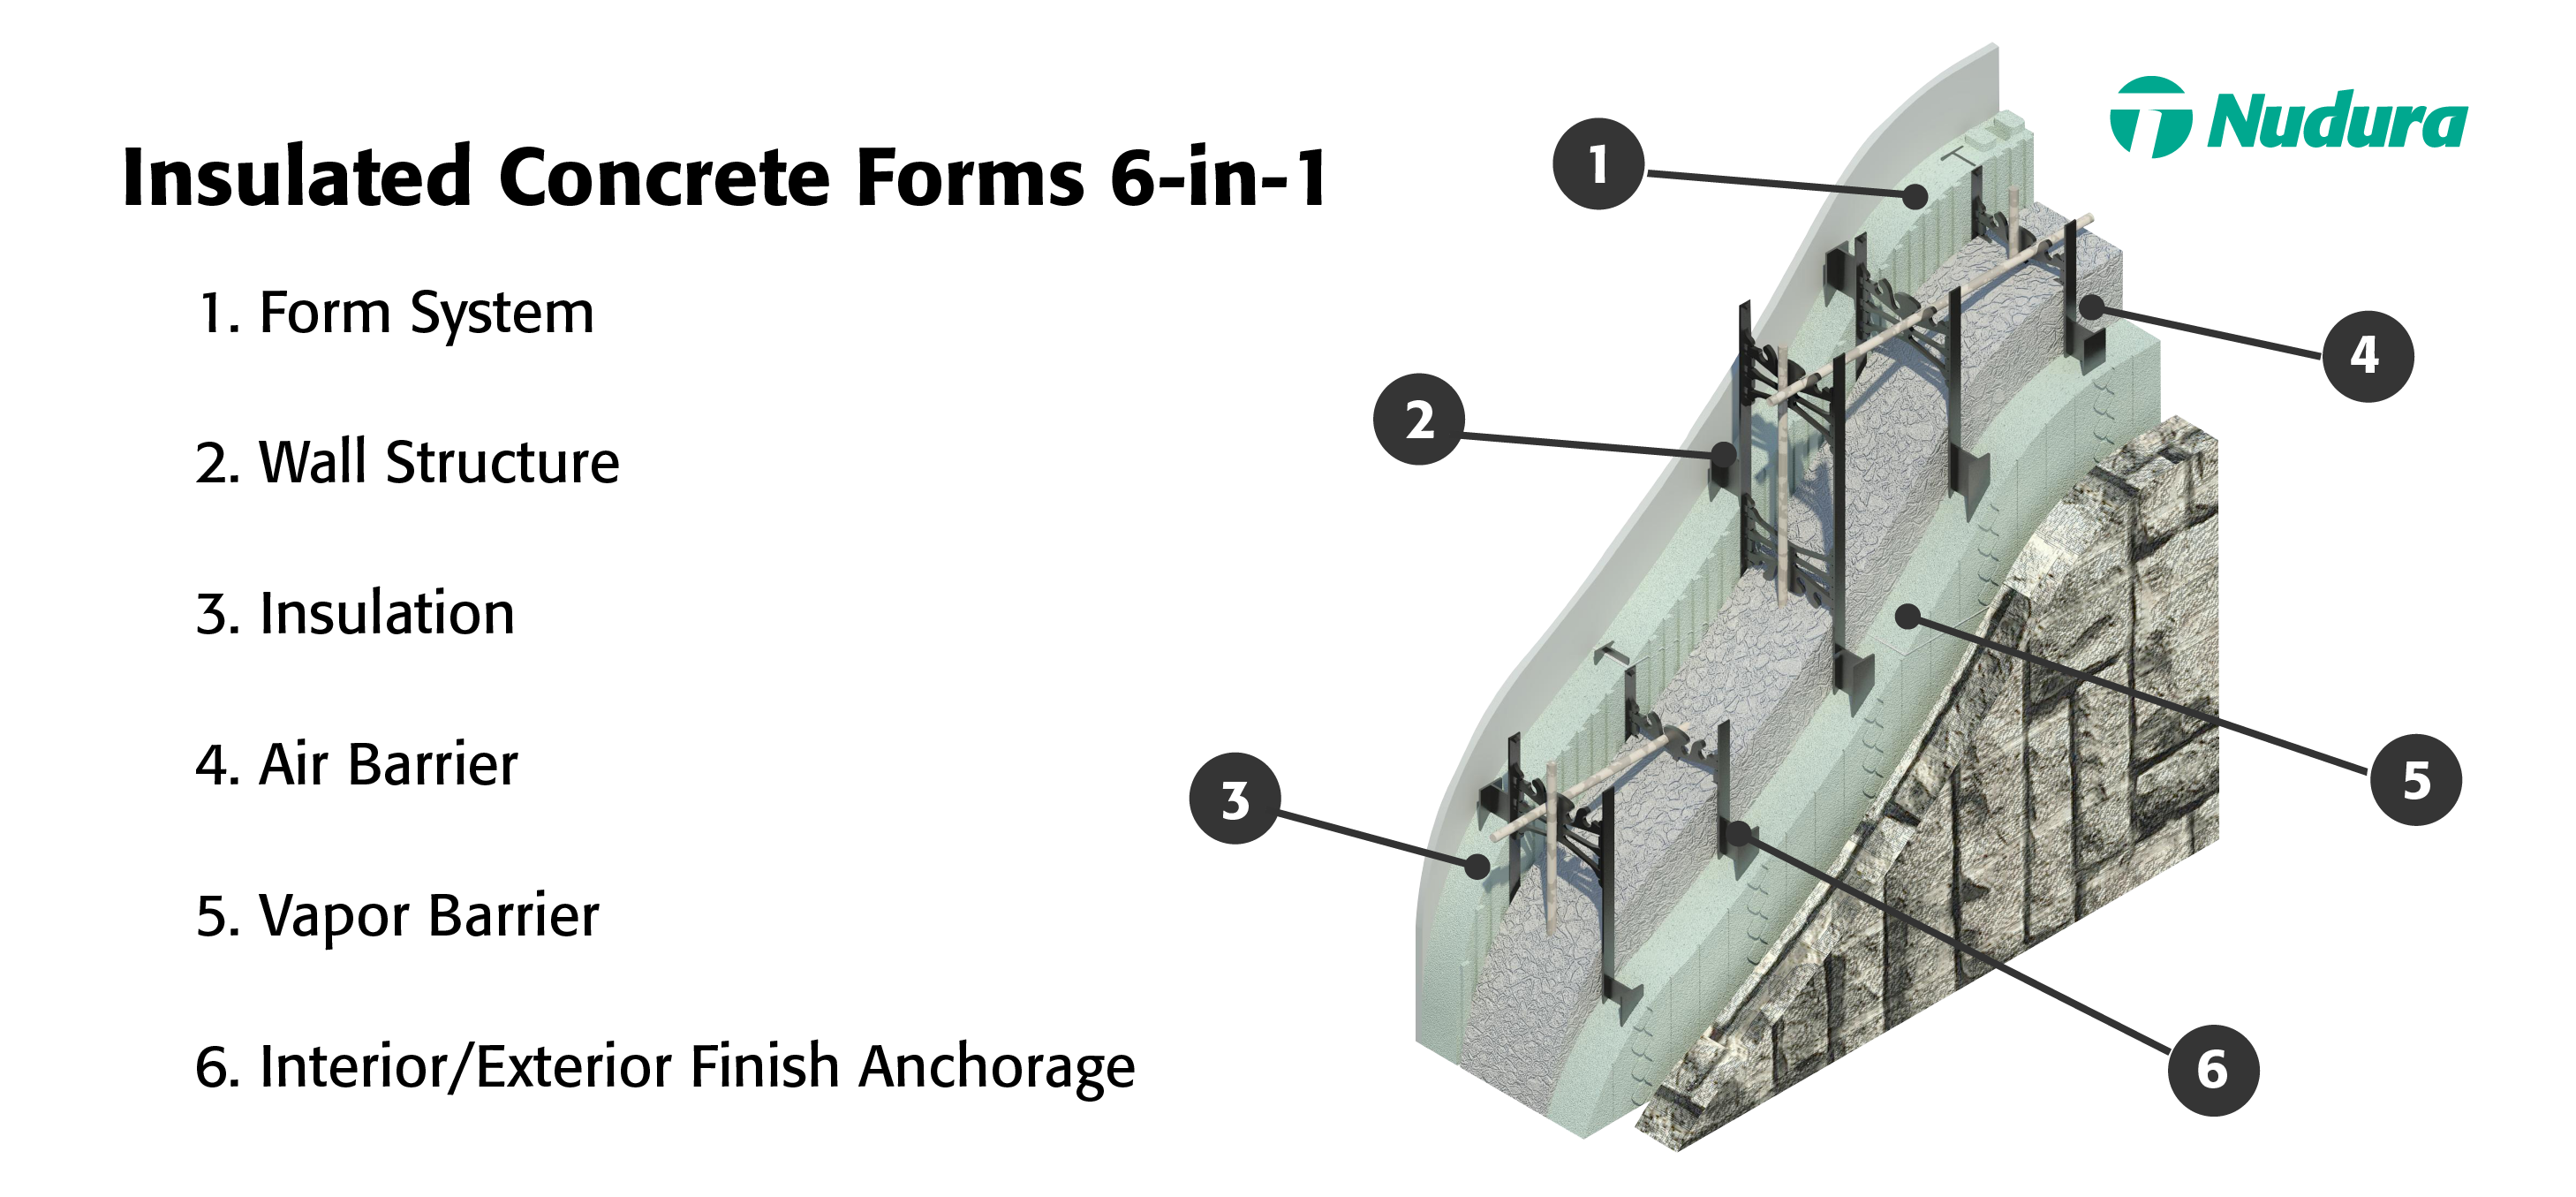 Nudura icf 6 in 1 building step